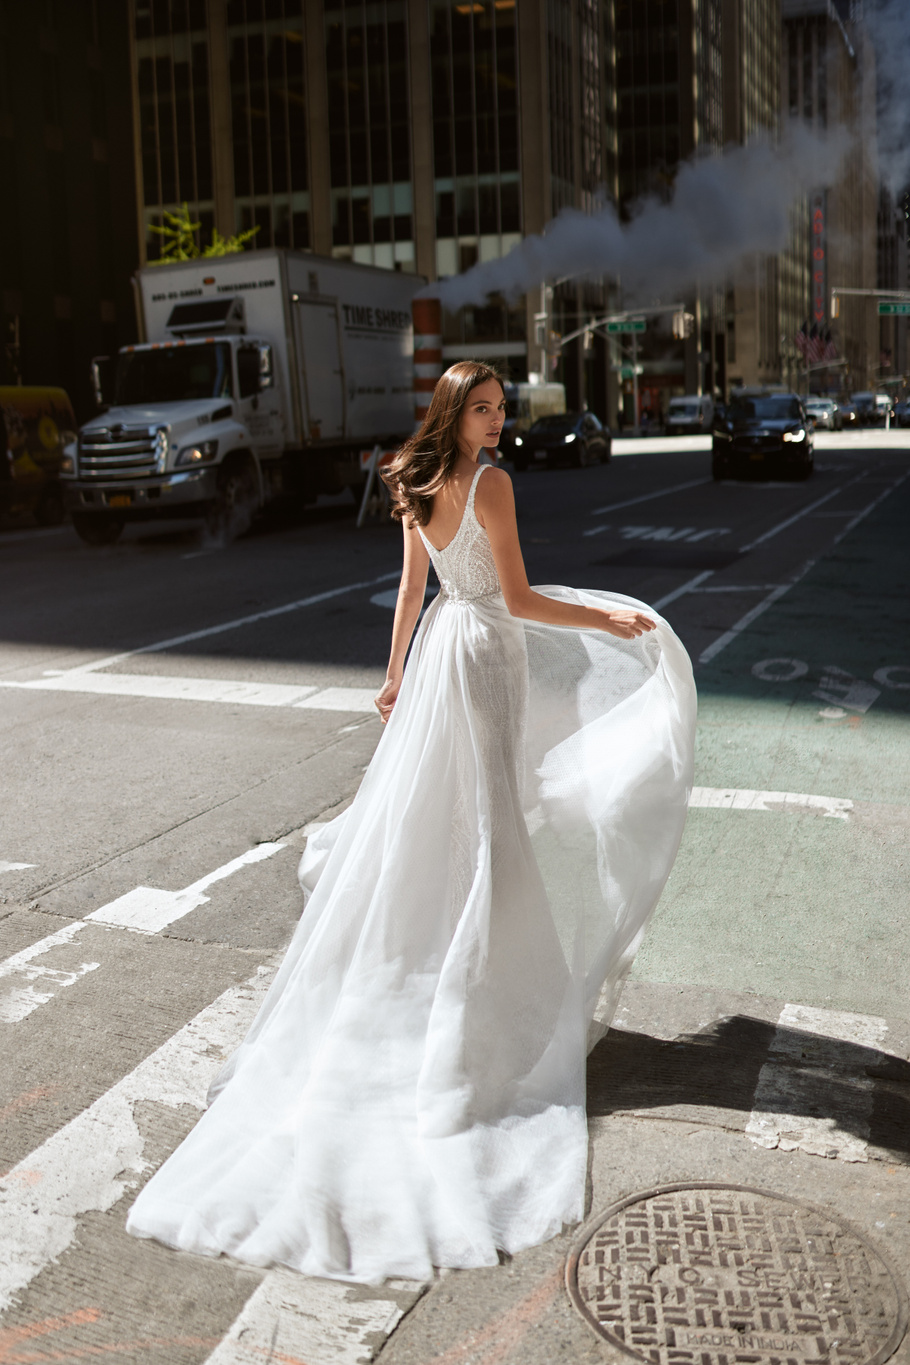 Купить свадебное платье «Бланш» Вона из коллекции Любовь в городе 2022 года в салоне «Мэри Трюфель»